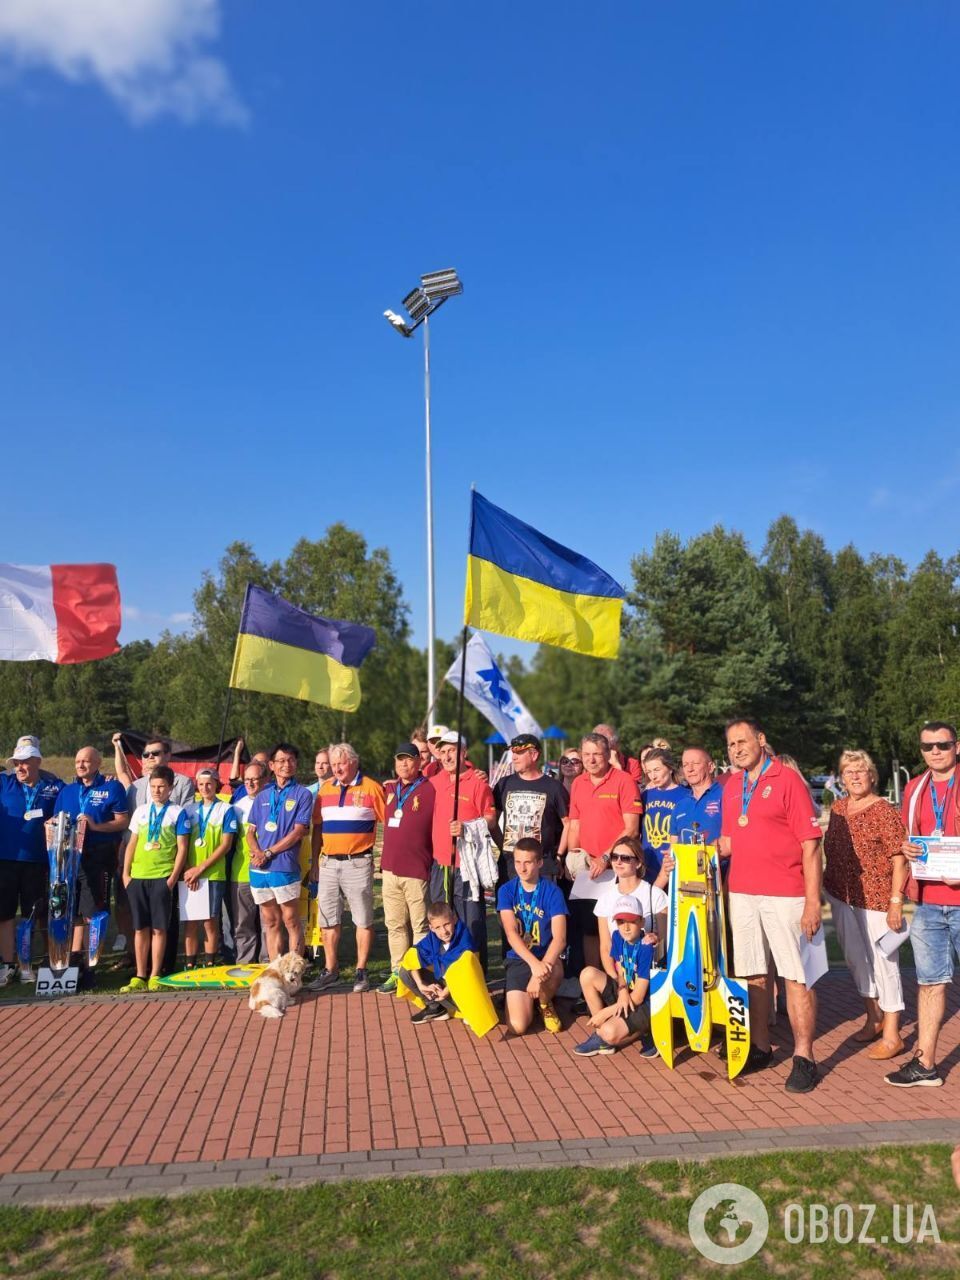 Формула-1 на воде: как Украина выступила на чемпионате Европы по судомодельному спорту